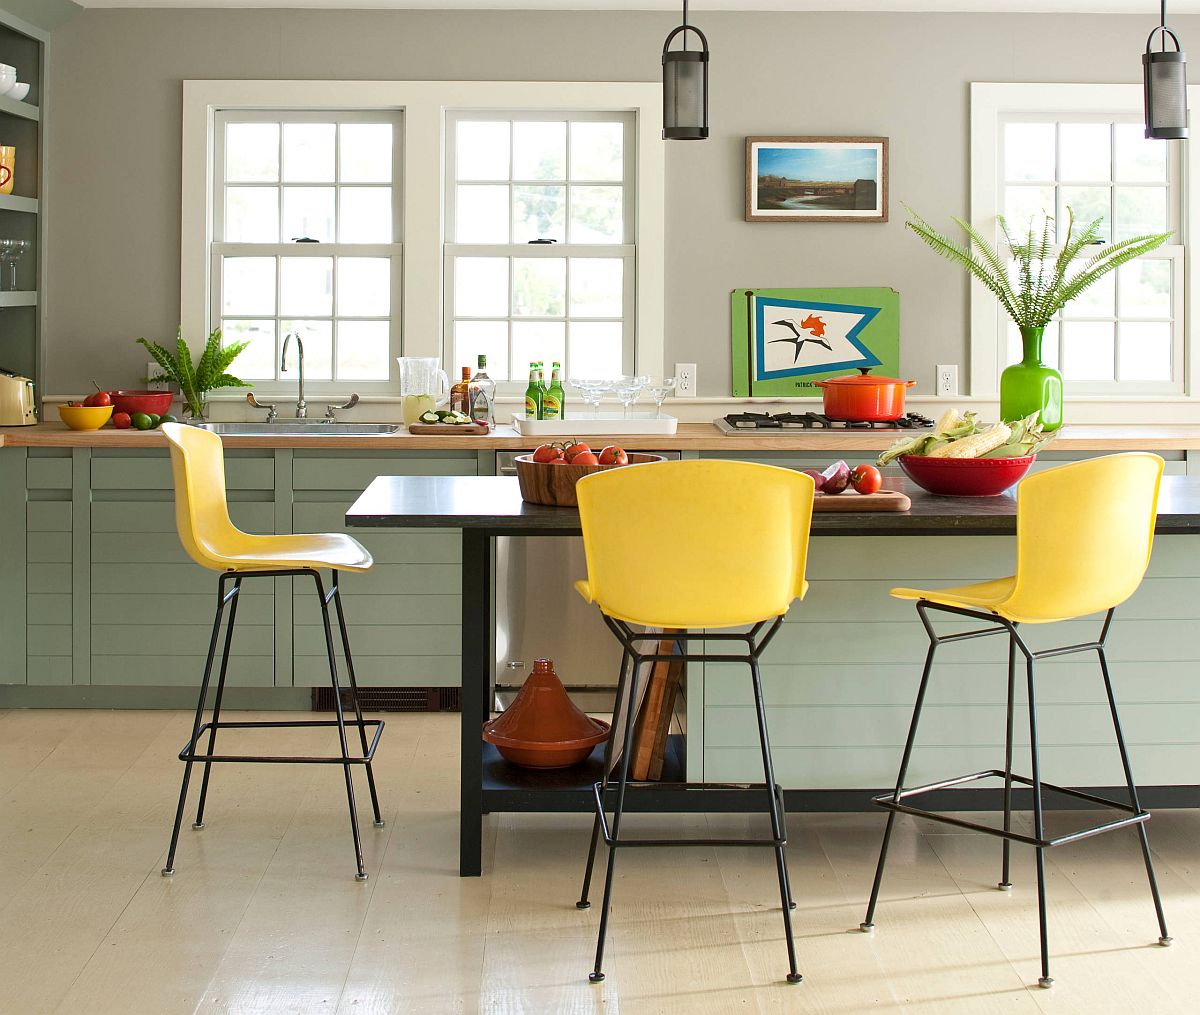 hình ảnh phòng bếp mùa hè thoáng sáng với điểm nhấn là bộ ghế ăn màu vàng chanh, bình cây màu xanh lá